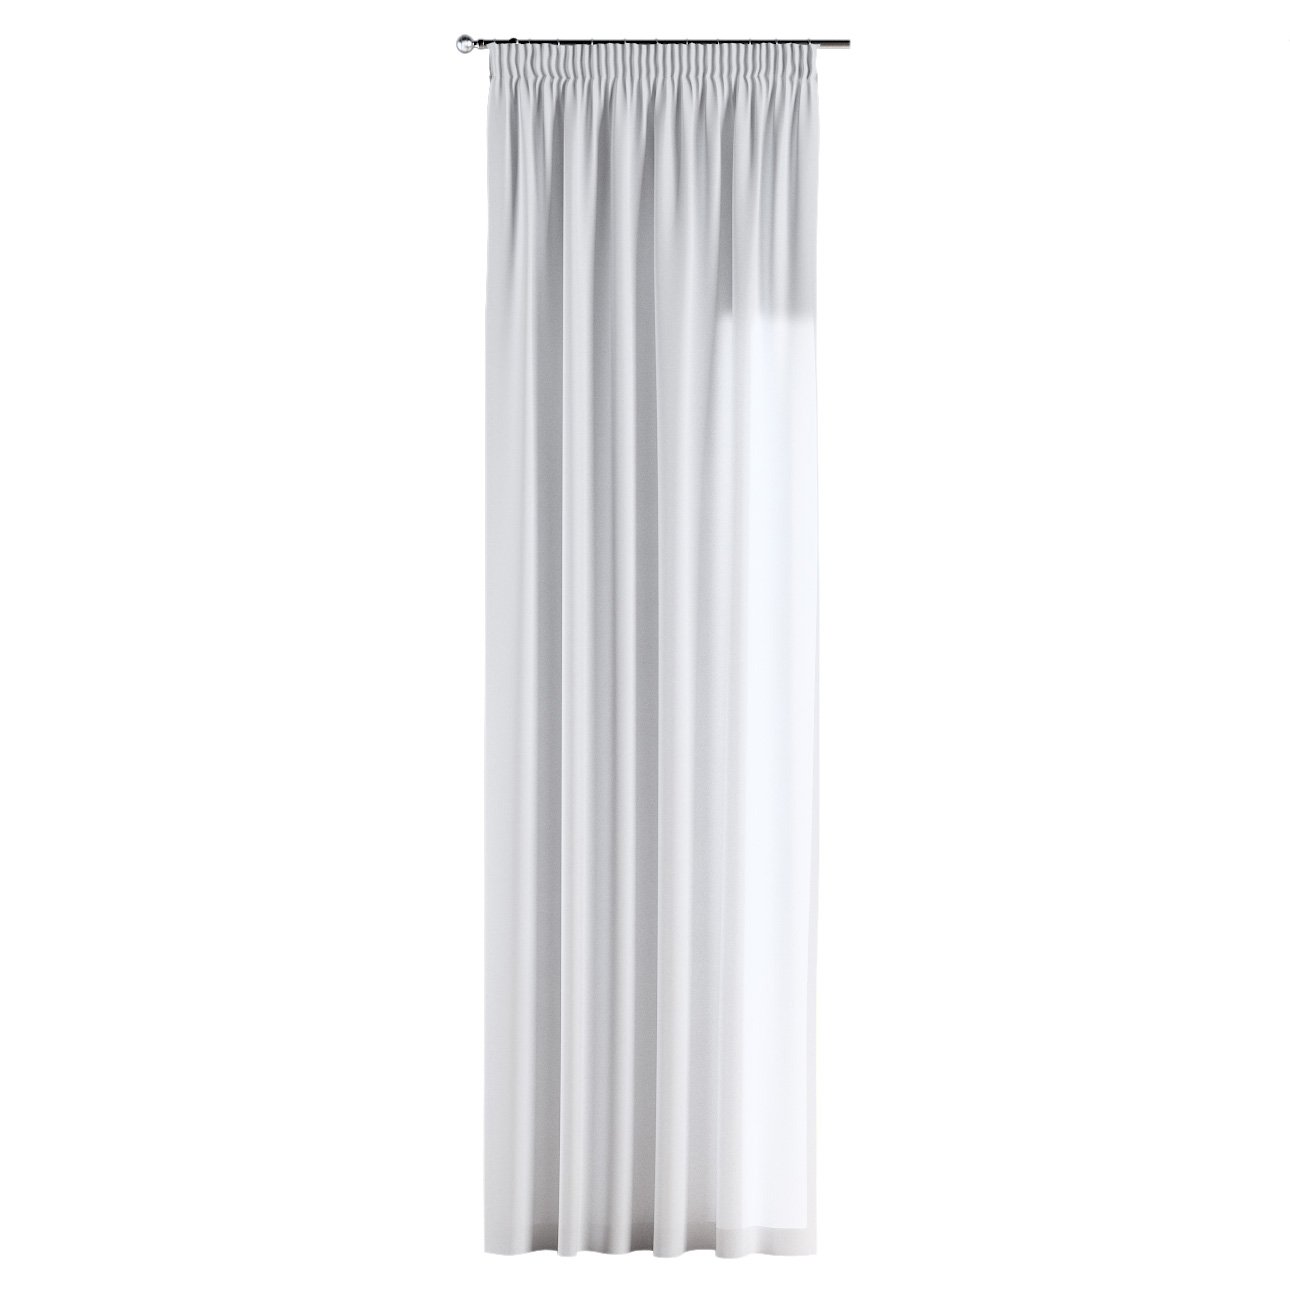 Vorhang mit Kräuselband, 133-02 weiß